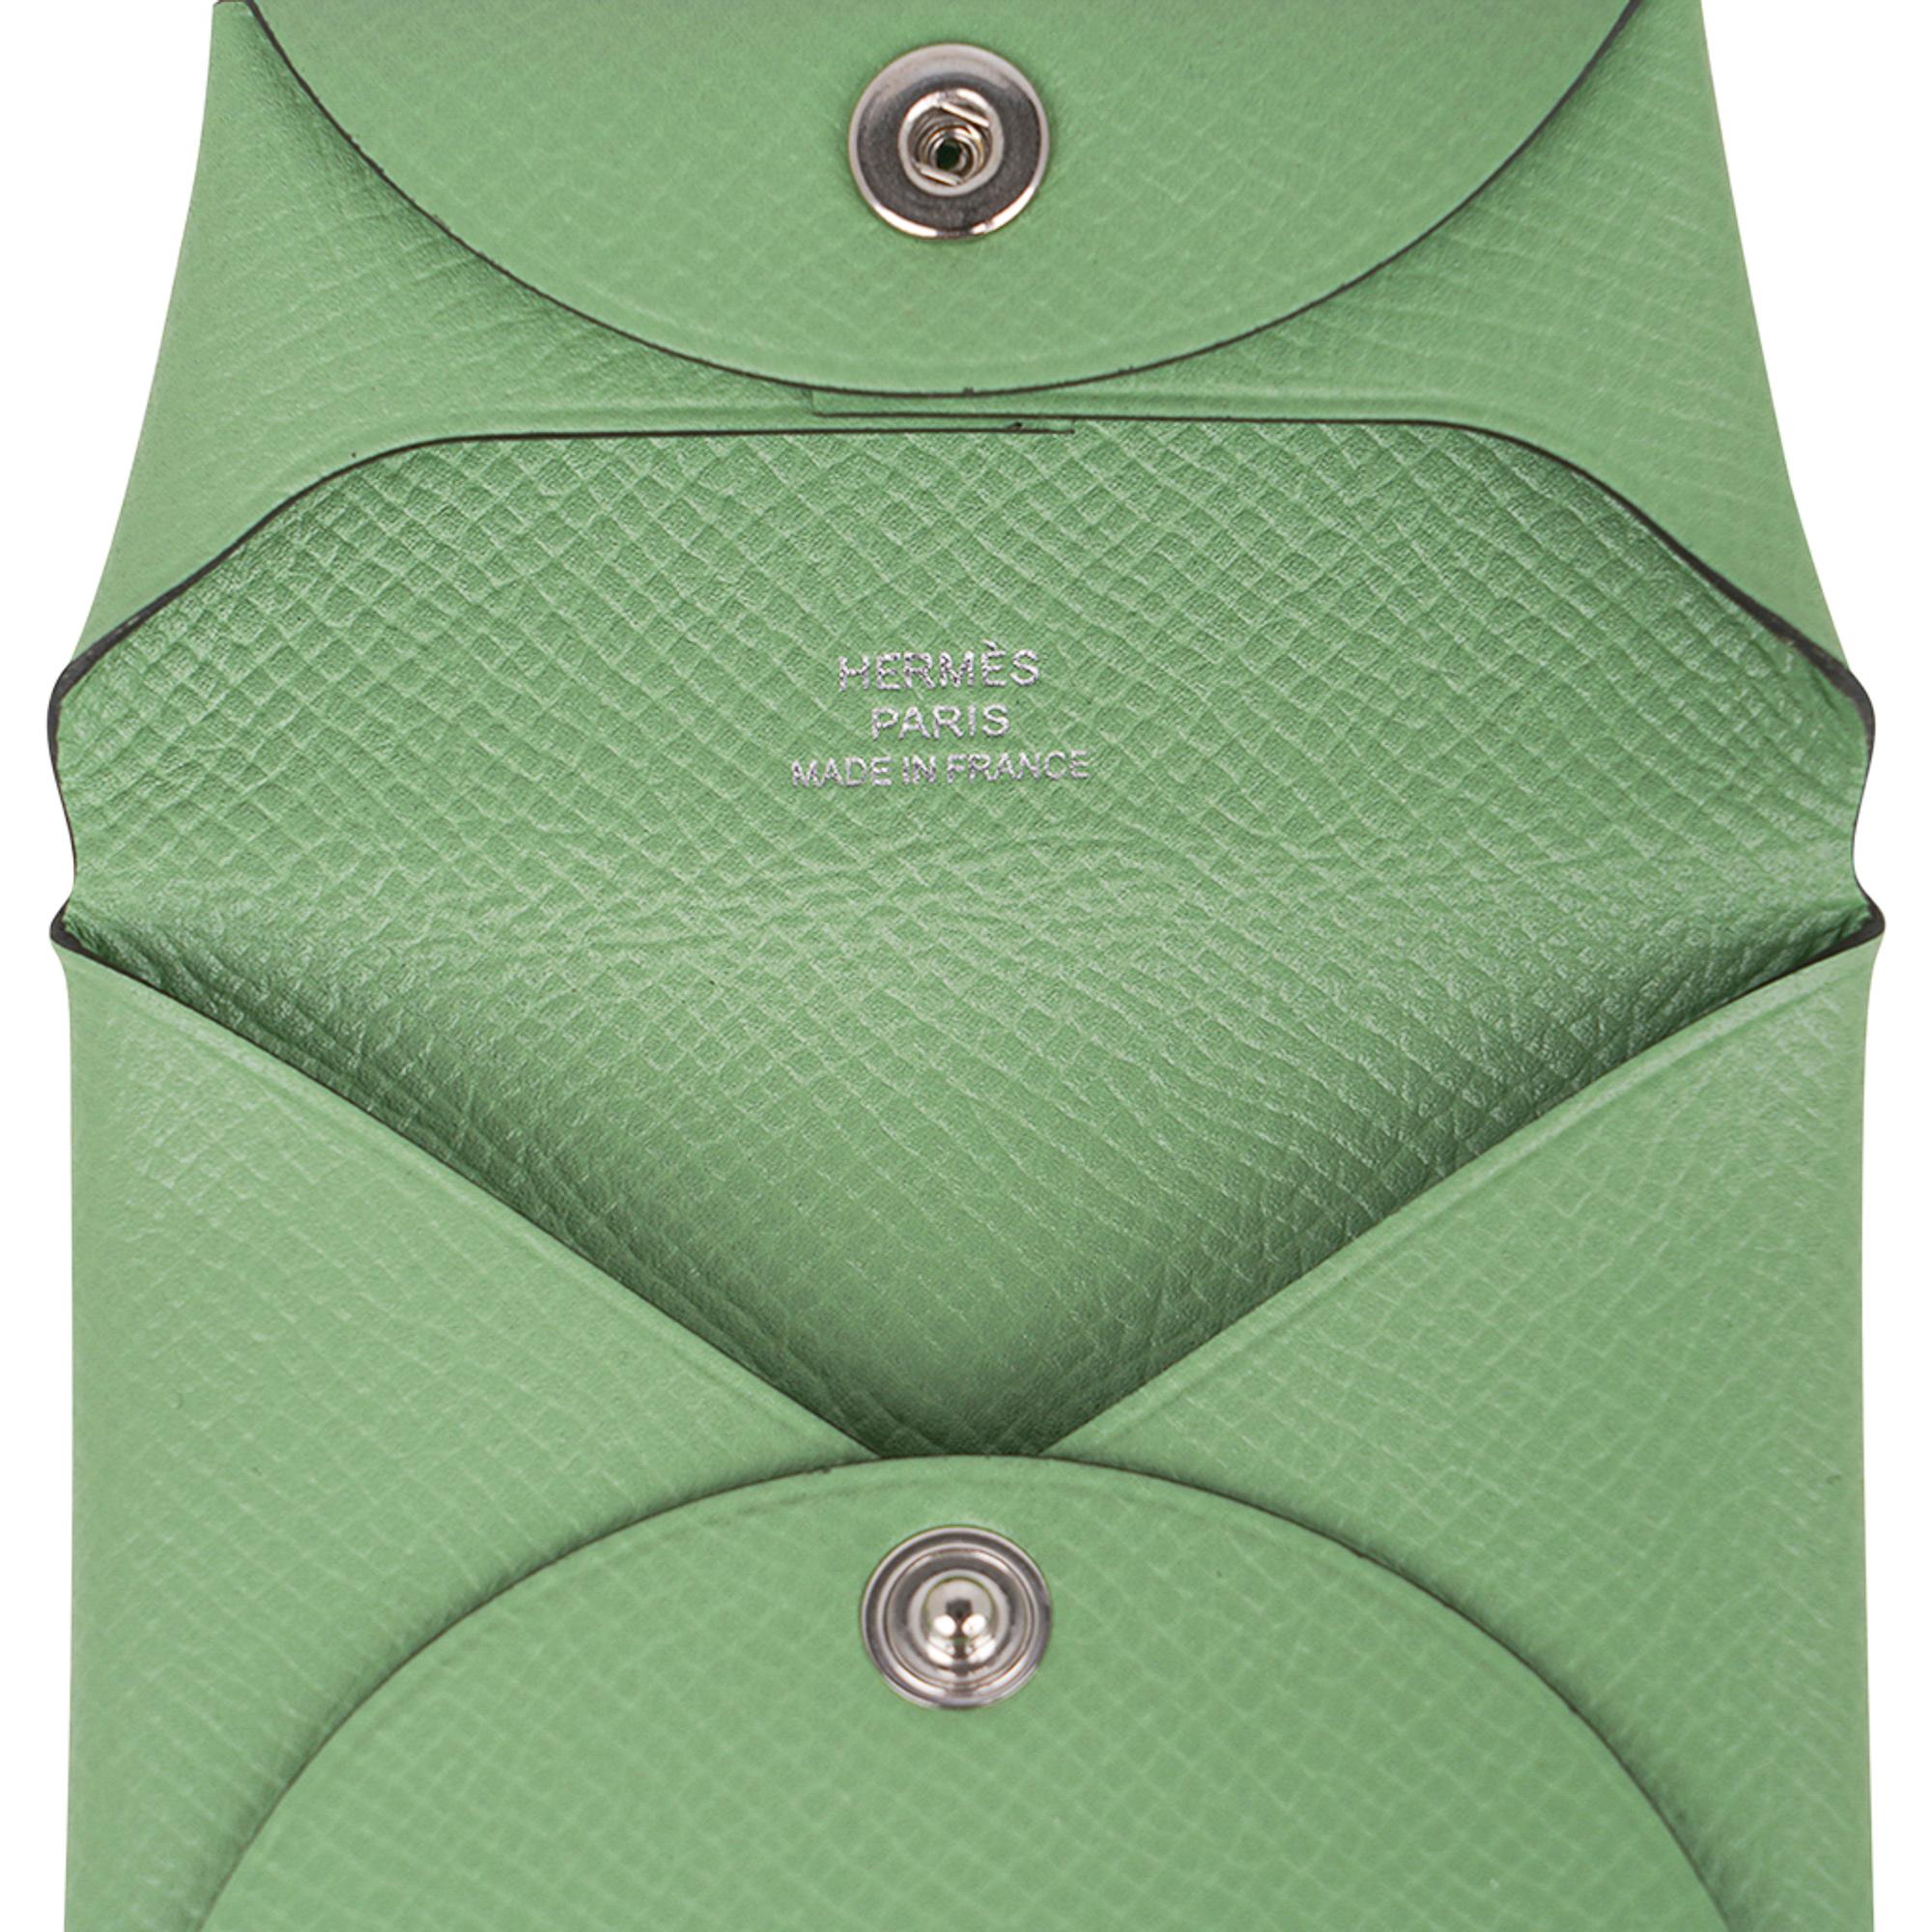 Women's Hermes Bastia Vert Criquet Change Purse Epsom Leather